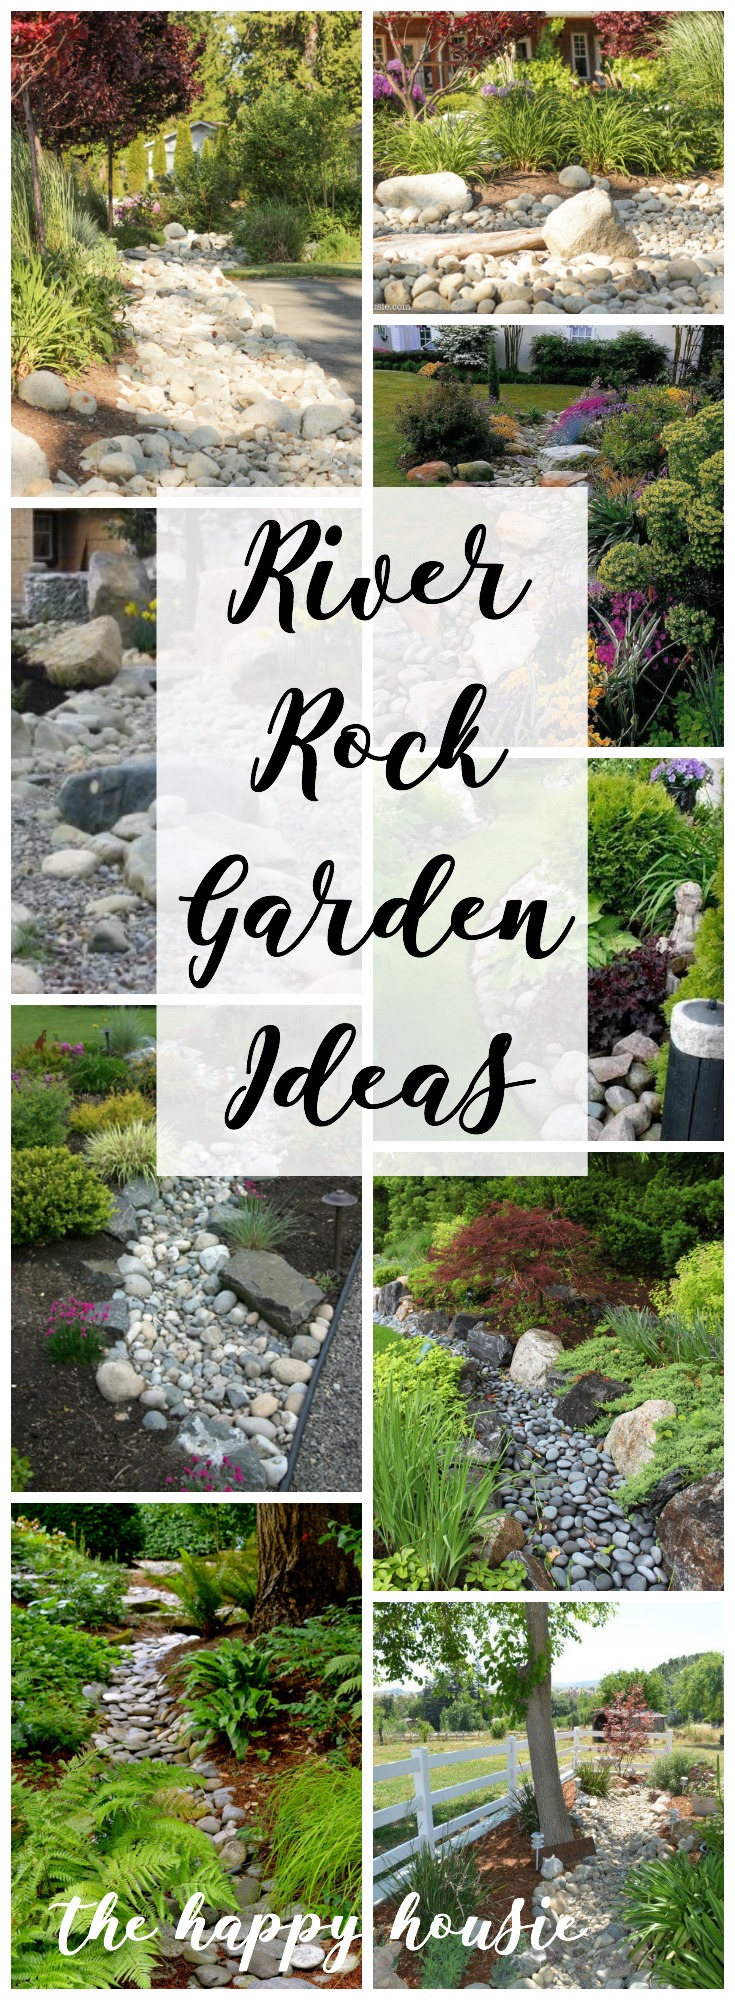 River Rock Garden Ideas graphic.